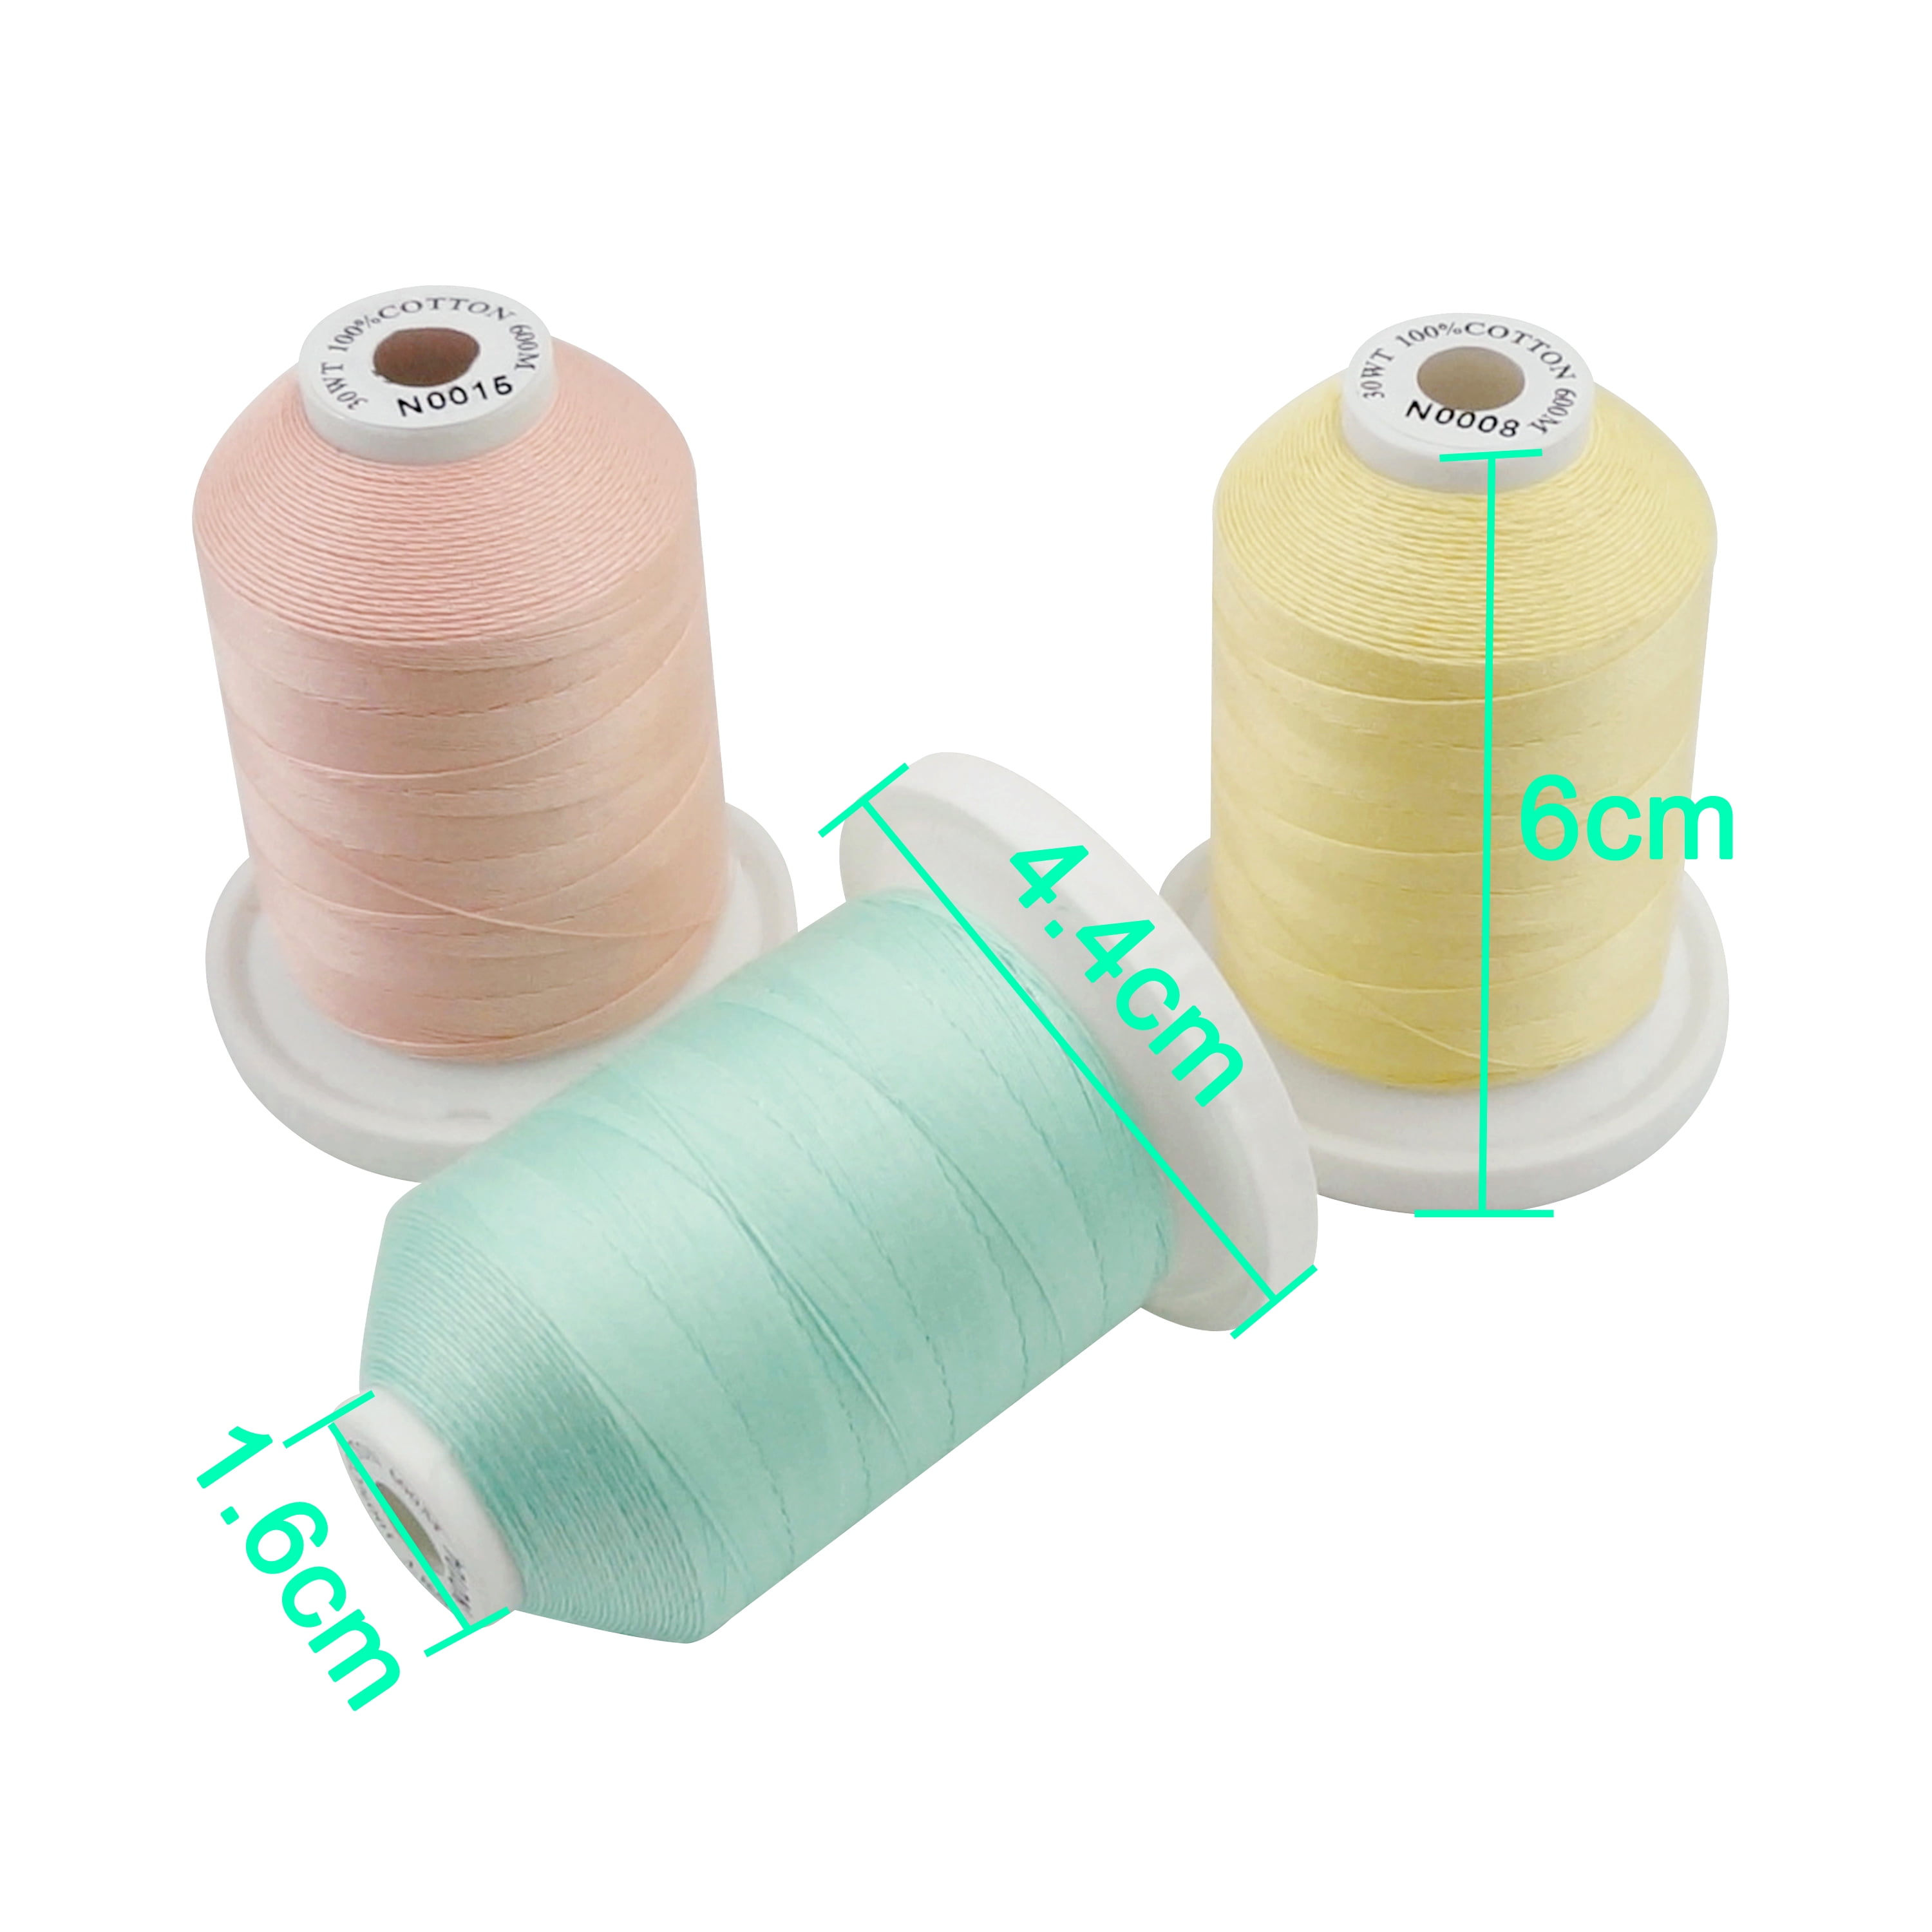 Poly-Cotton Thread - Schermerhorn Bros. Co.